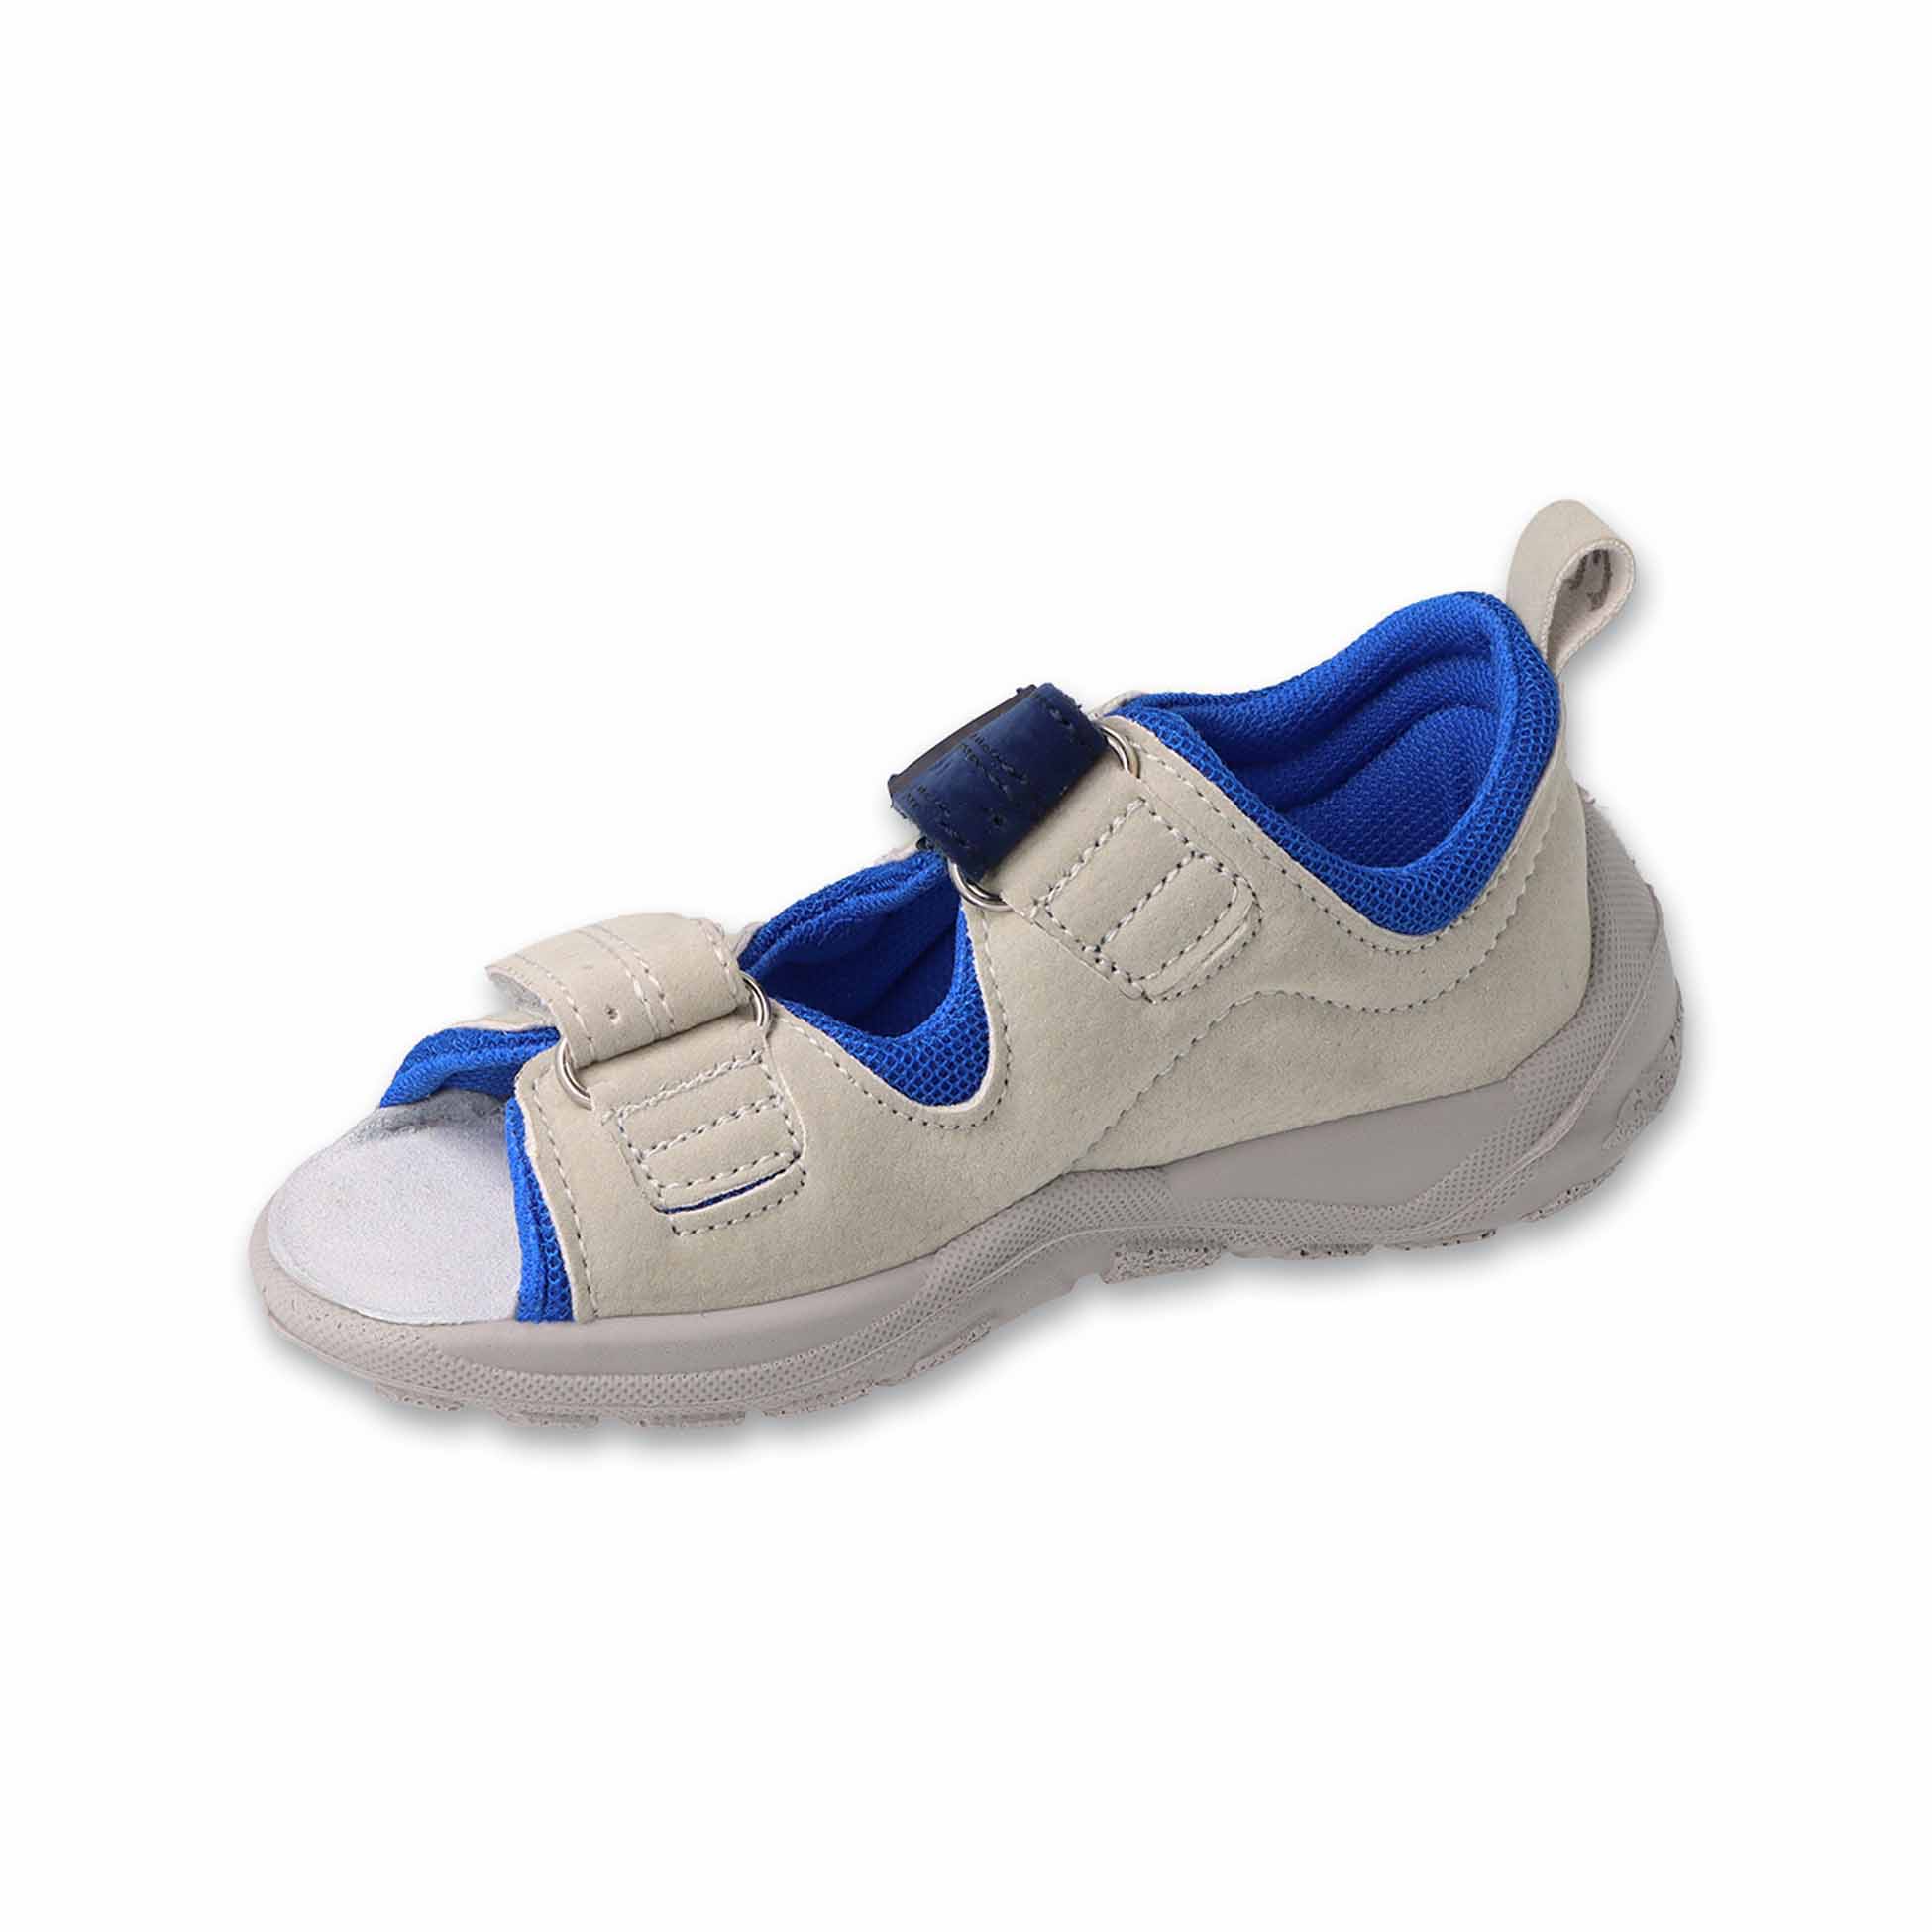 Szaro-Niebieskie sandałki chłopięce Befado